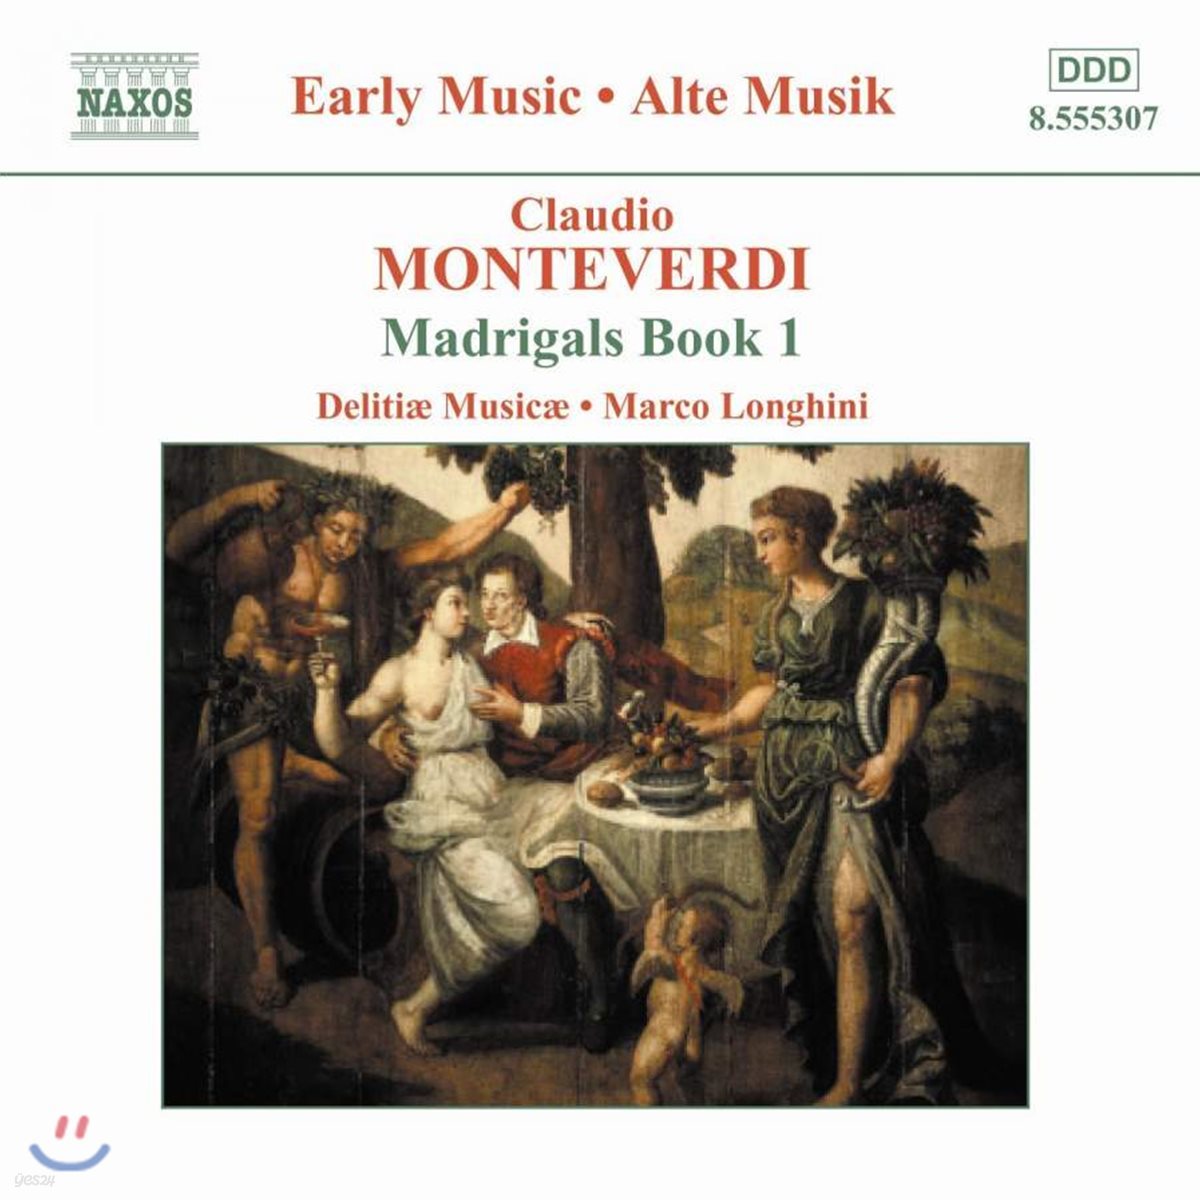 Delitiae Musicae 몬테베르디: 마드리갈 1권 (Early Music - Monteverdi: Madrigals Book I)